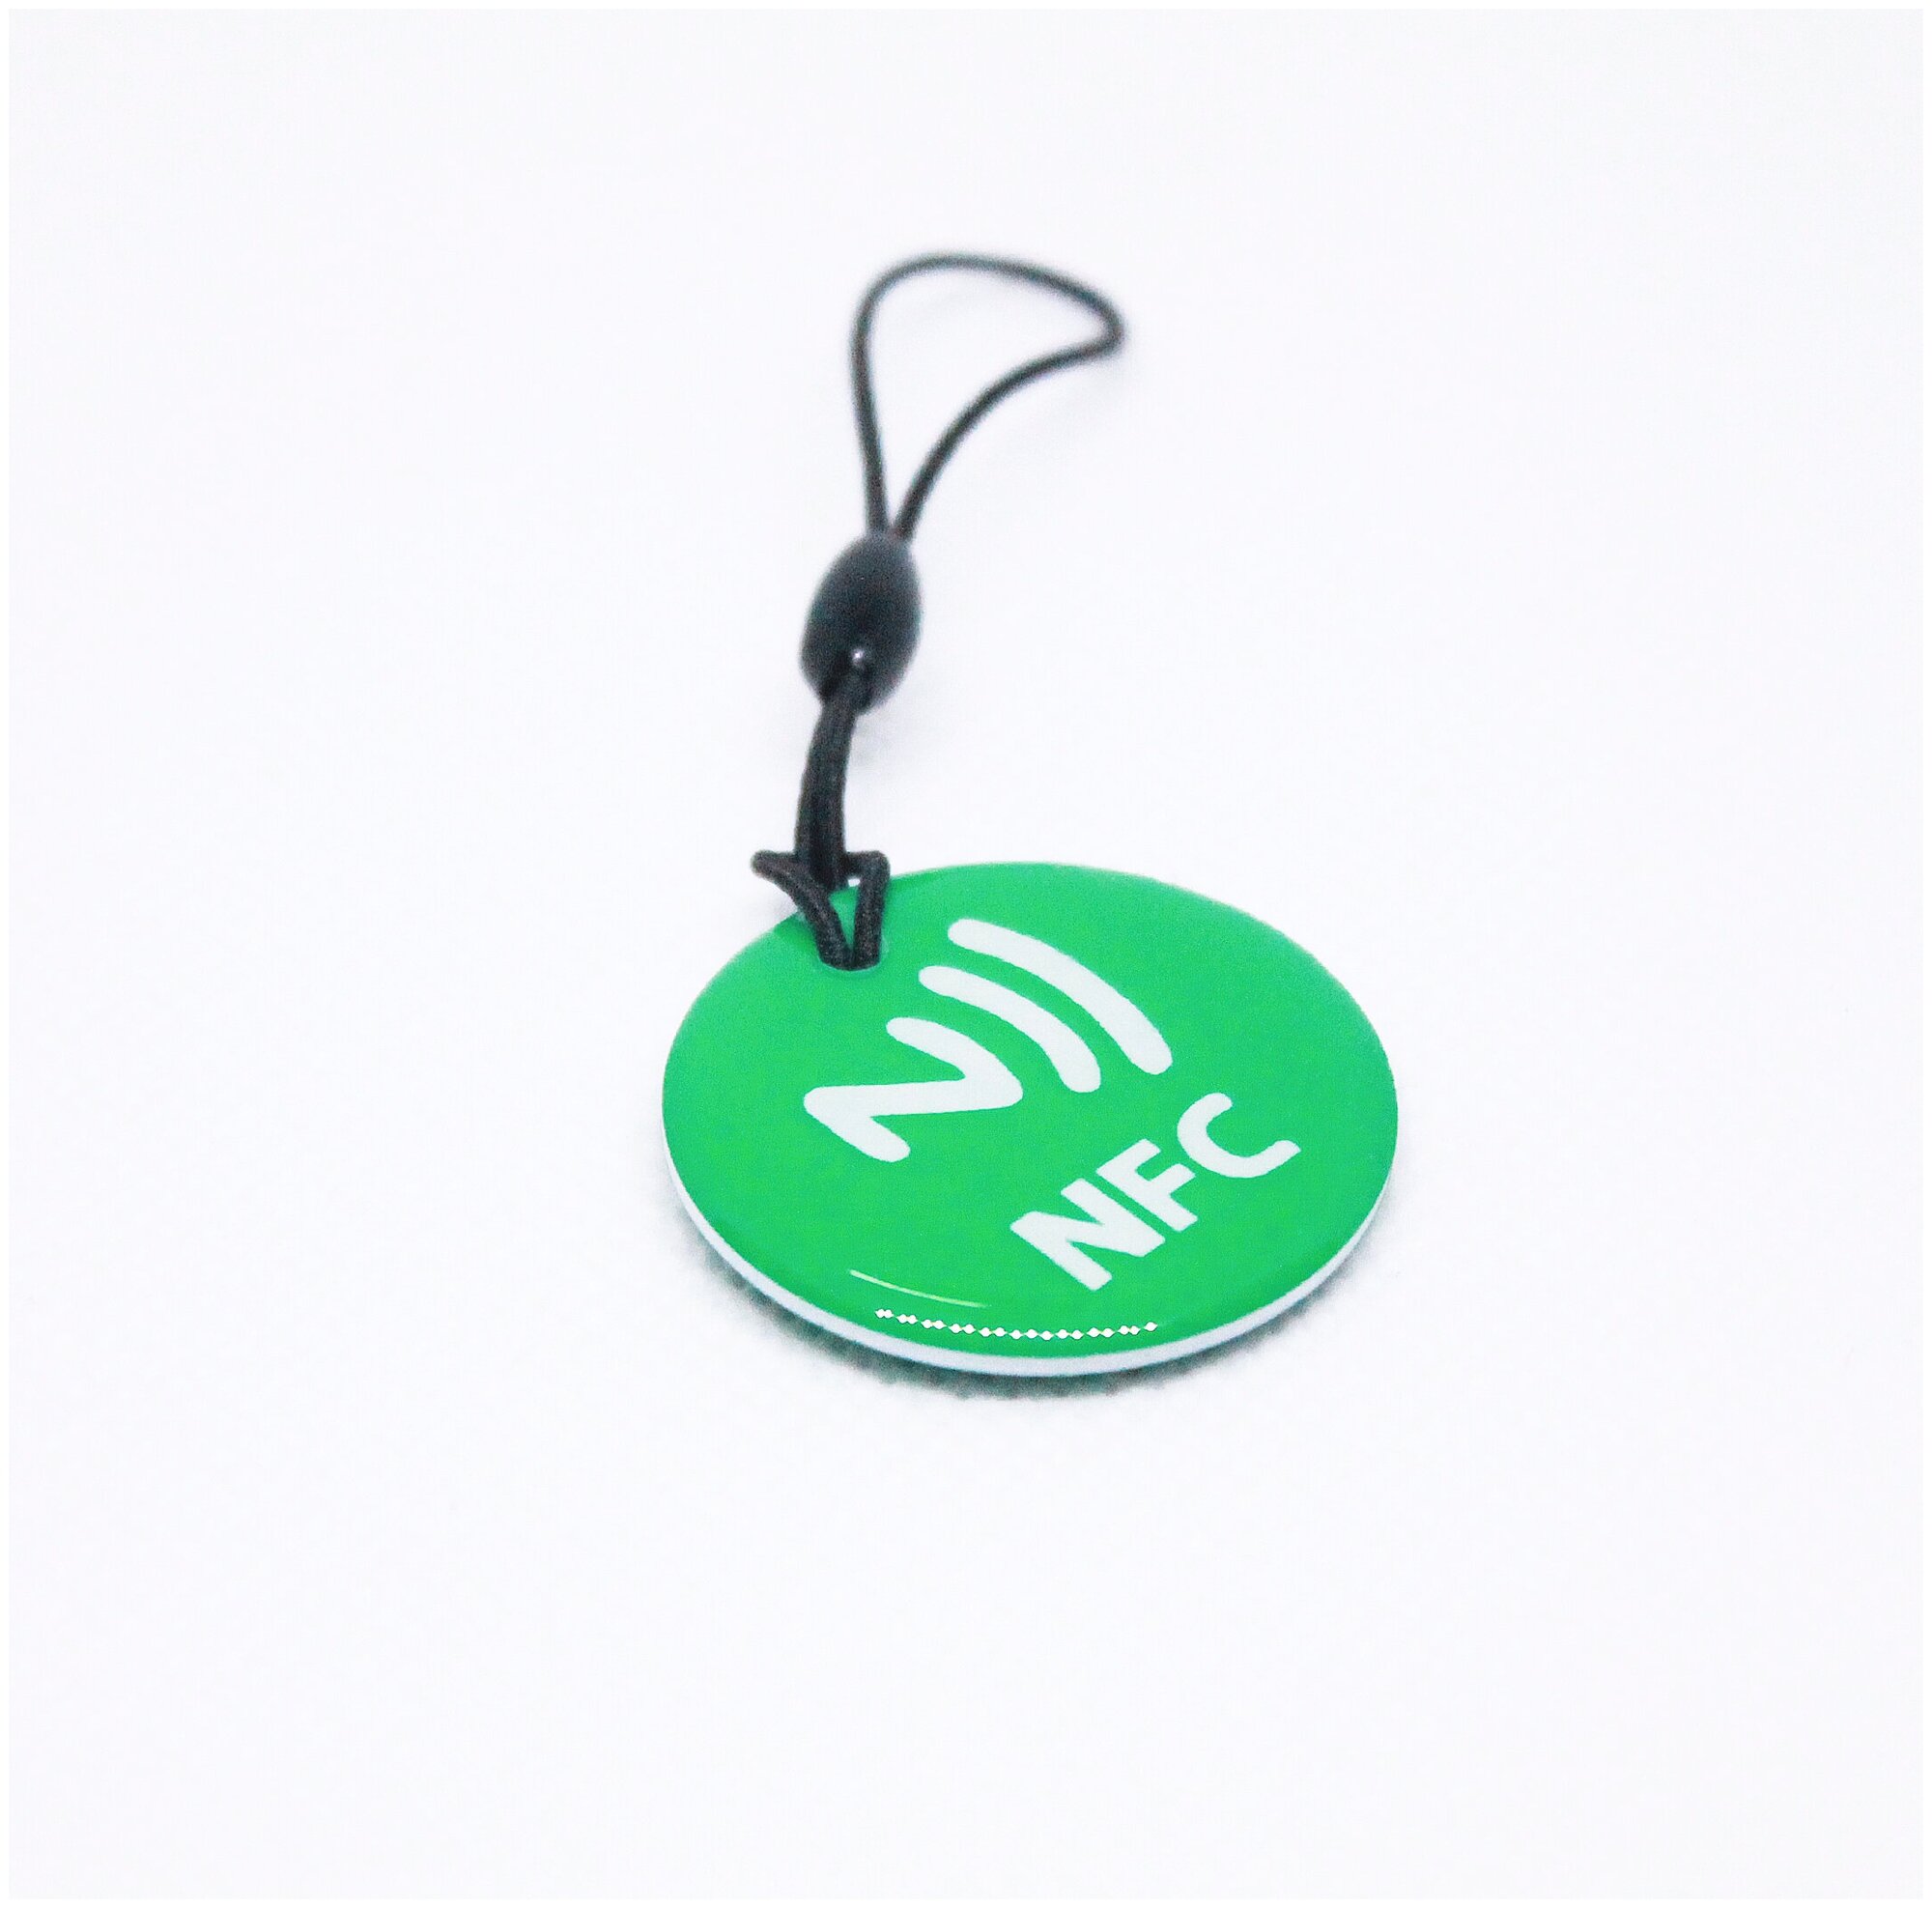 Метка NFC NTAG213 эпоксидная. Для автоматизации, умный дом, электронная визитка НФС. Цвет зеленый